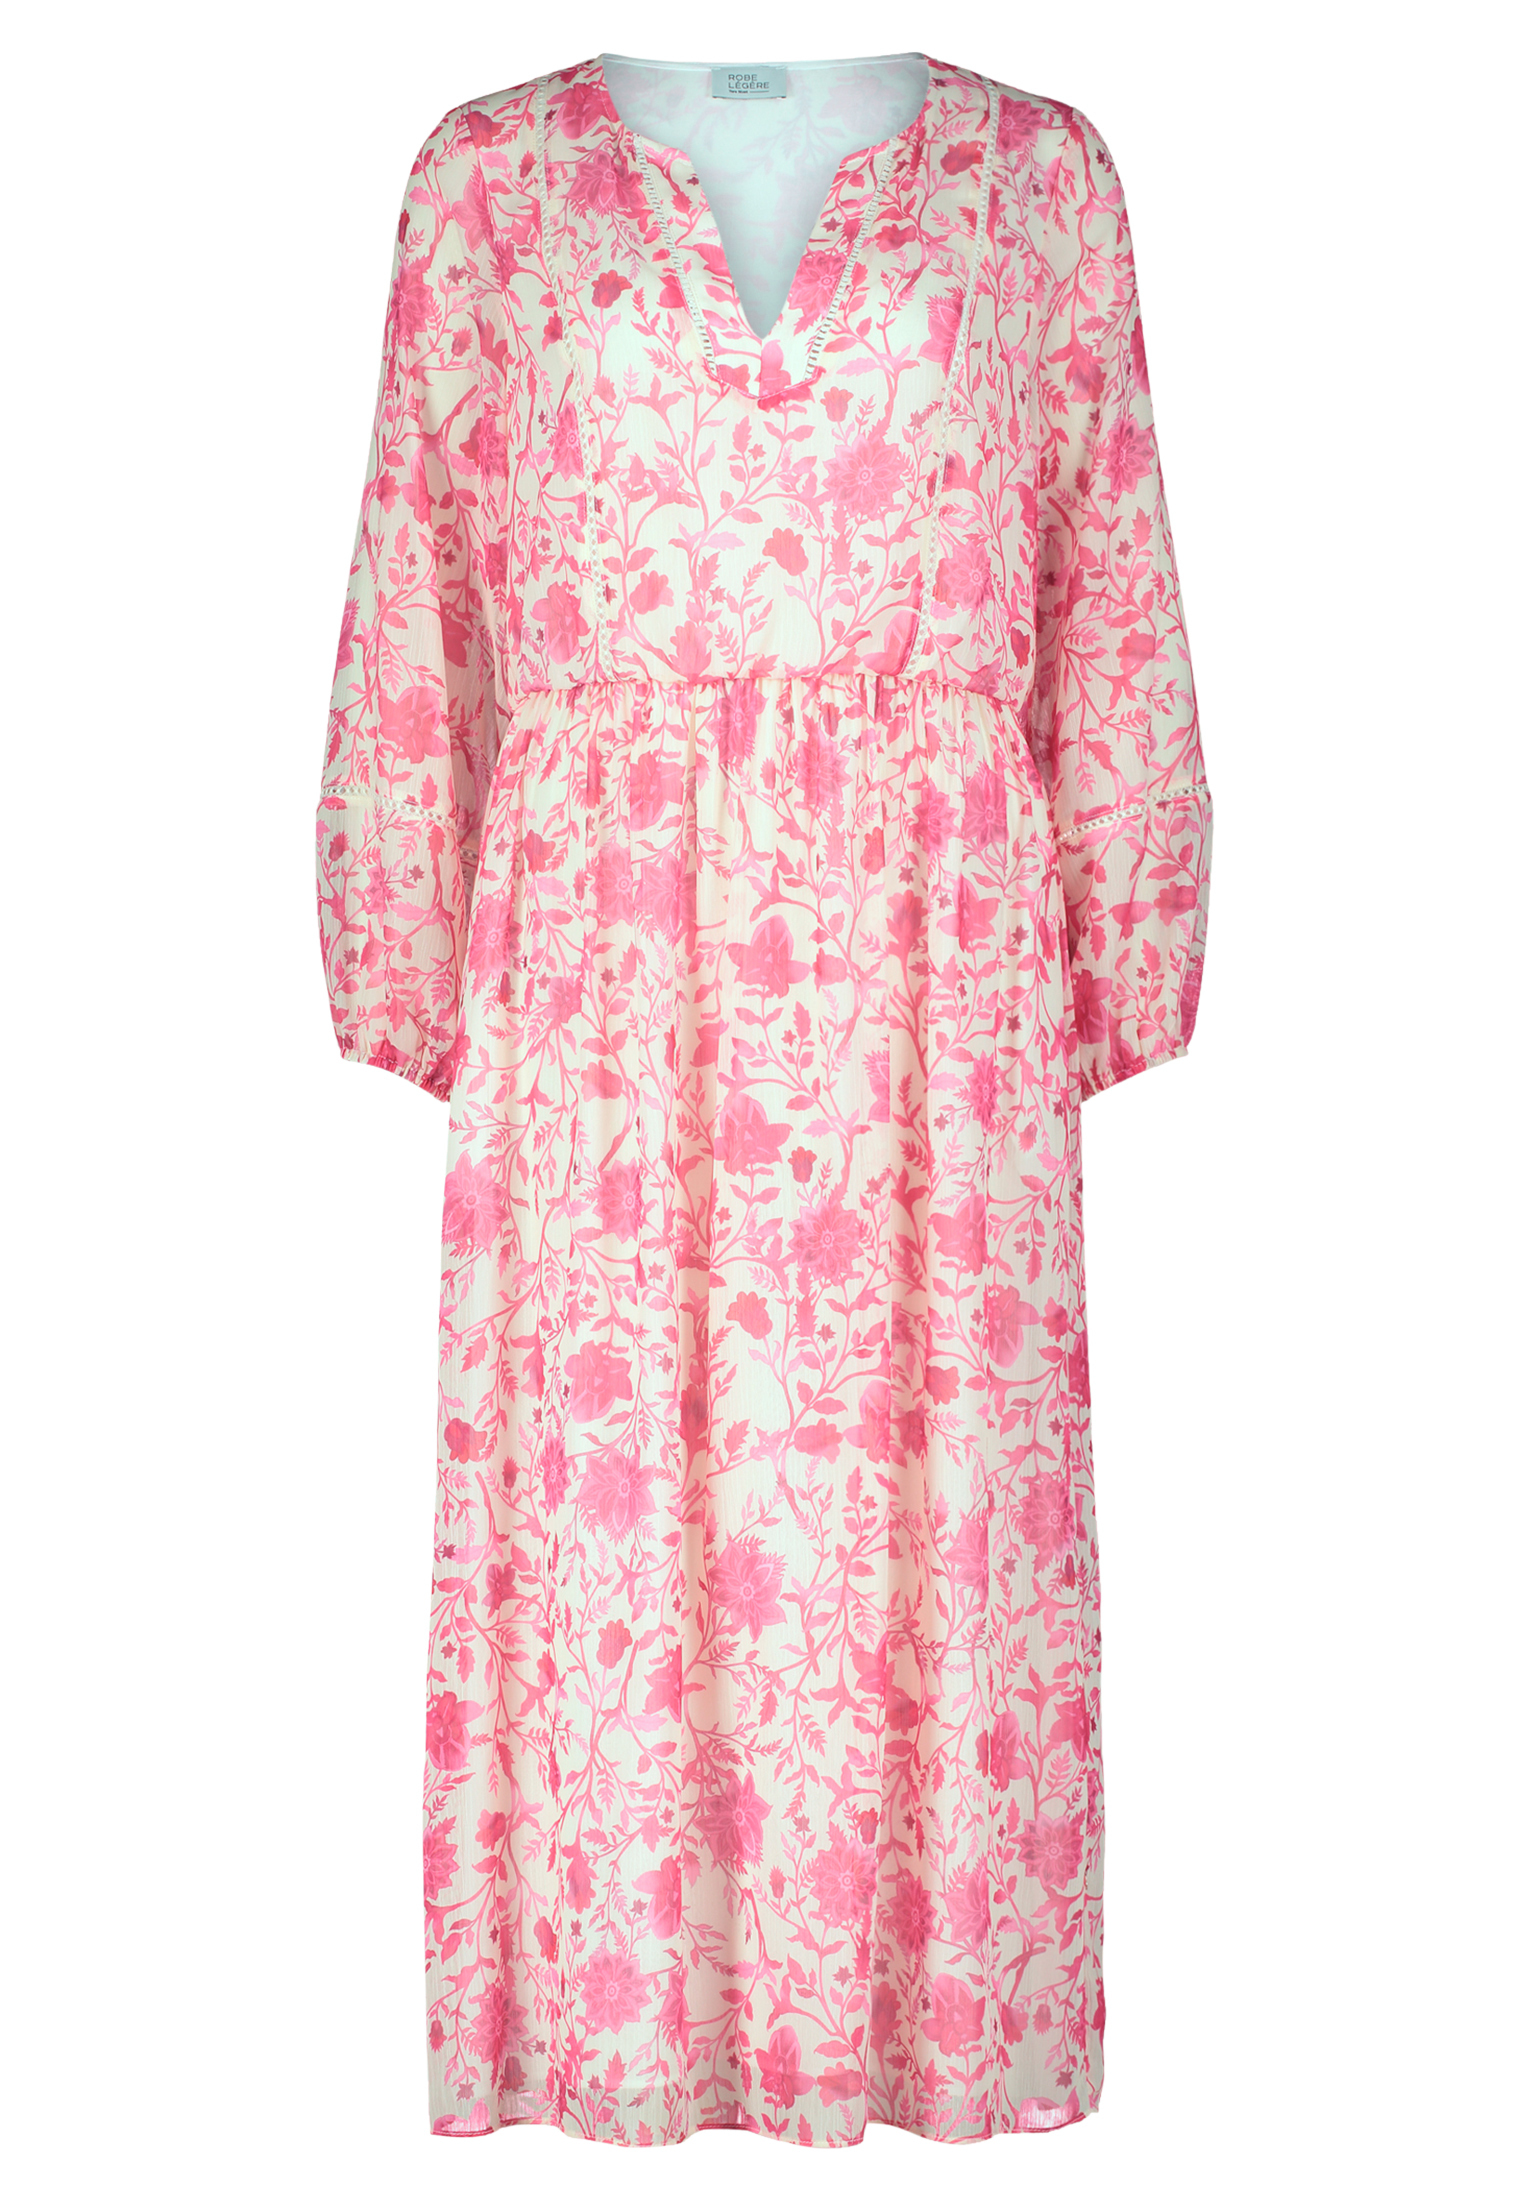 Платье Vera Mont Sommer im Boho Style, цвет Cream/Pink цена и фото